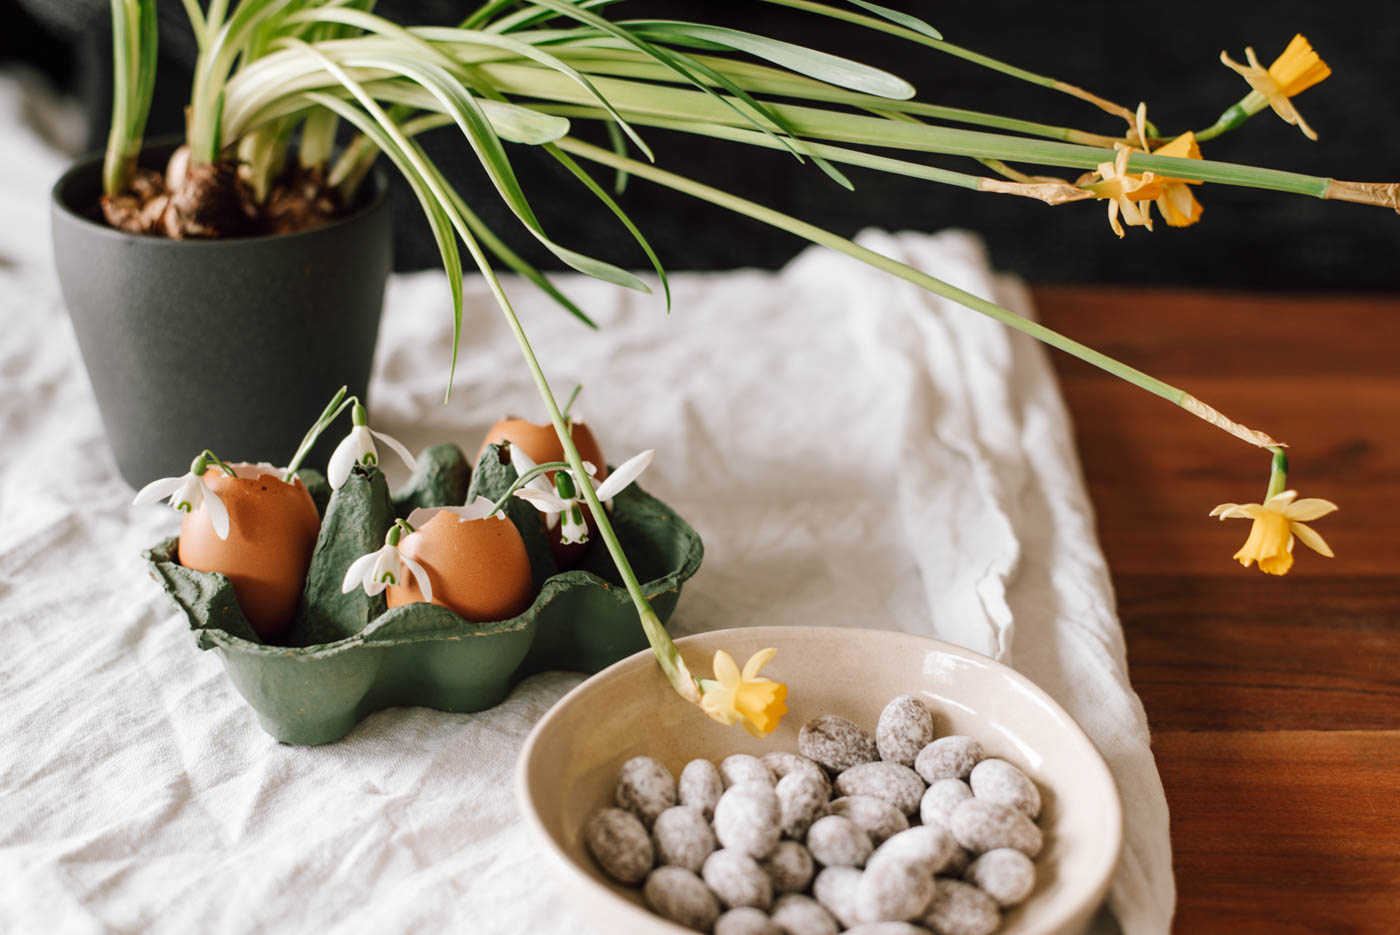 Einfache DIY Upcycling Idee für die Deko fürs Osterfrühstück/Osterbrunch: Osterdeko mit Eierkarton und frischen Blüten schnell selber machen.